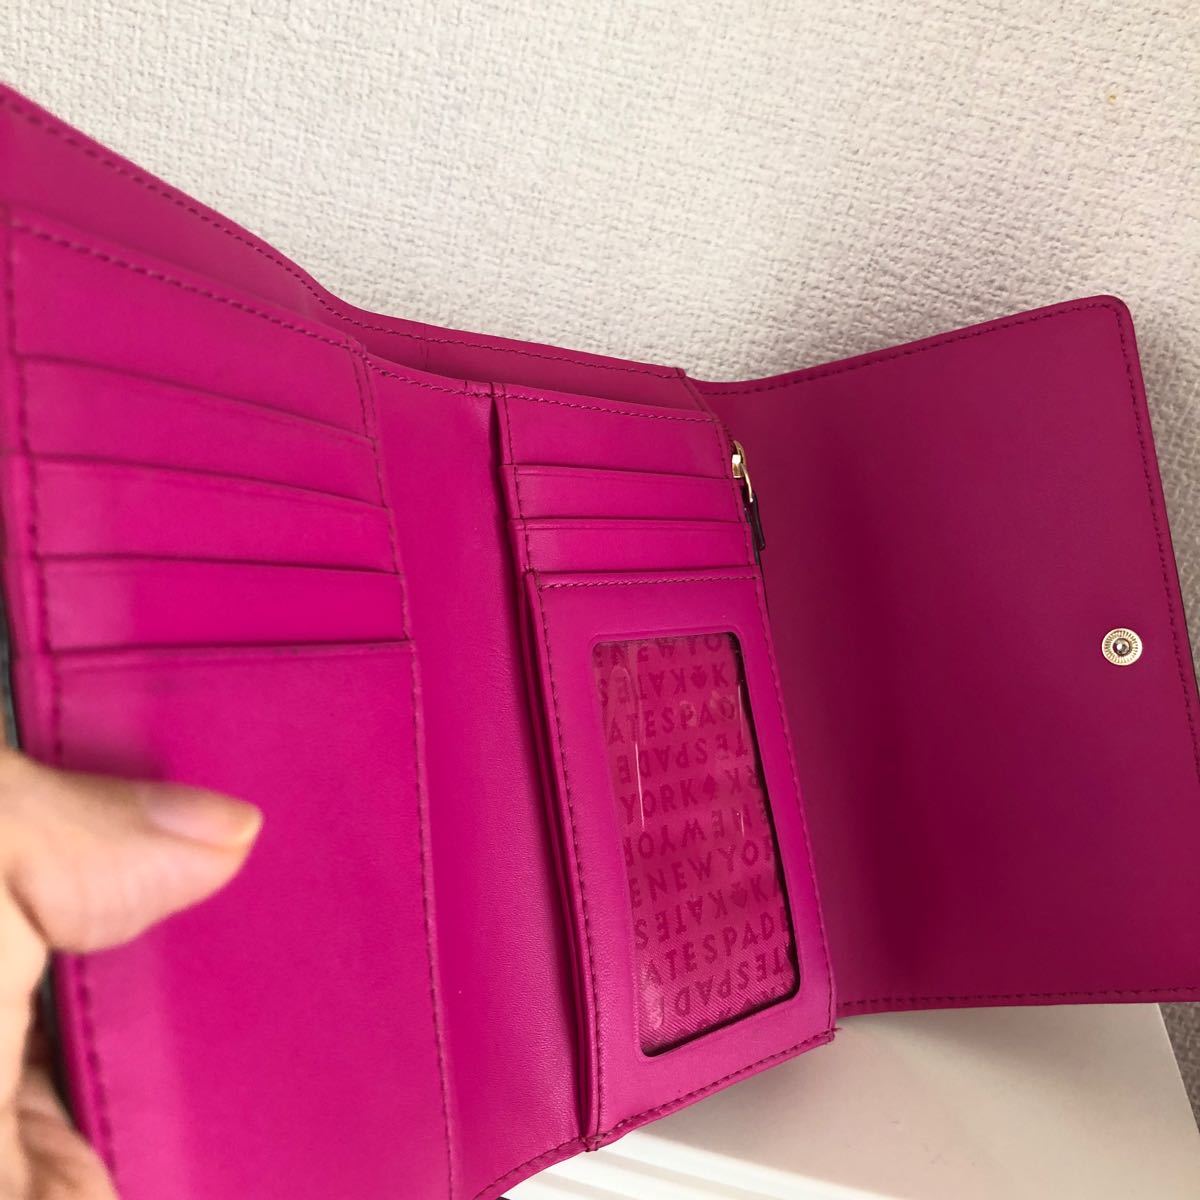 ケイトスペード 三つ折財布 ピンク リボン 汚れありのため格安出品です